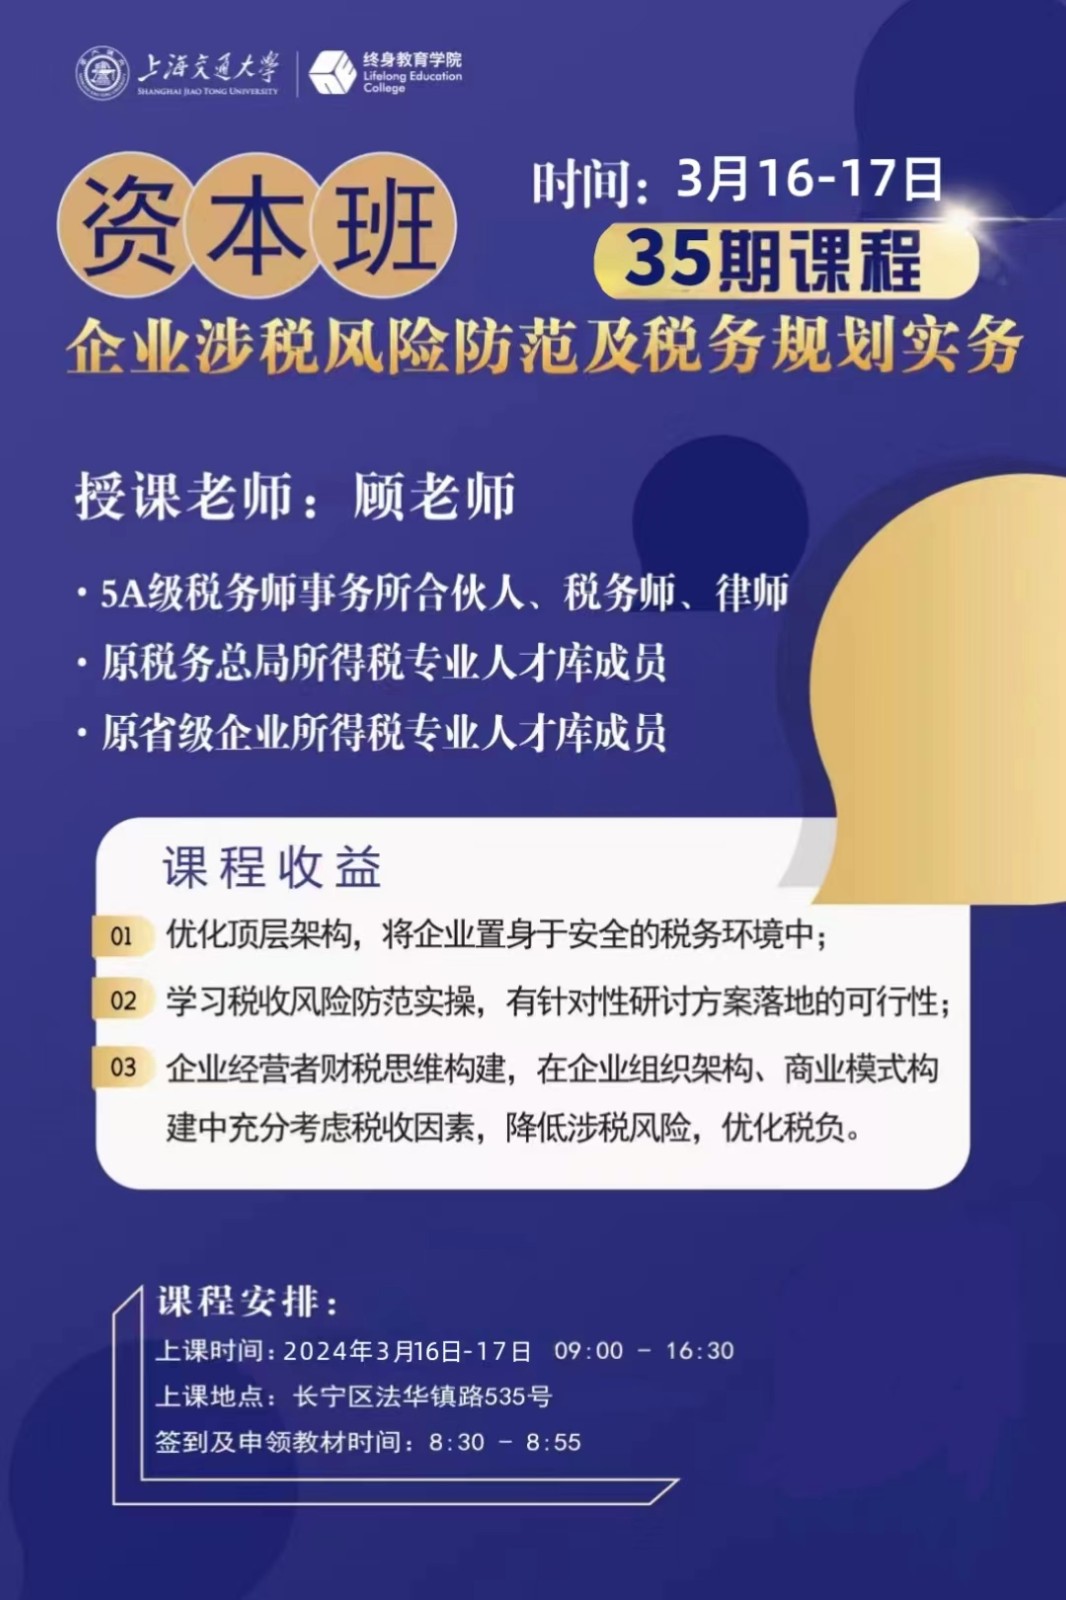 上海交通大学资本班2024年3月份开课通知